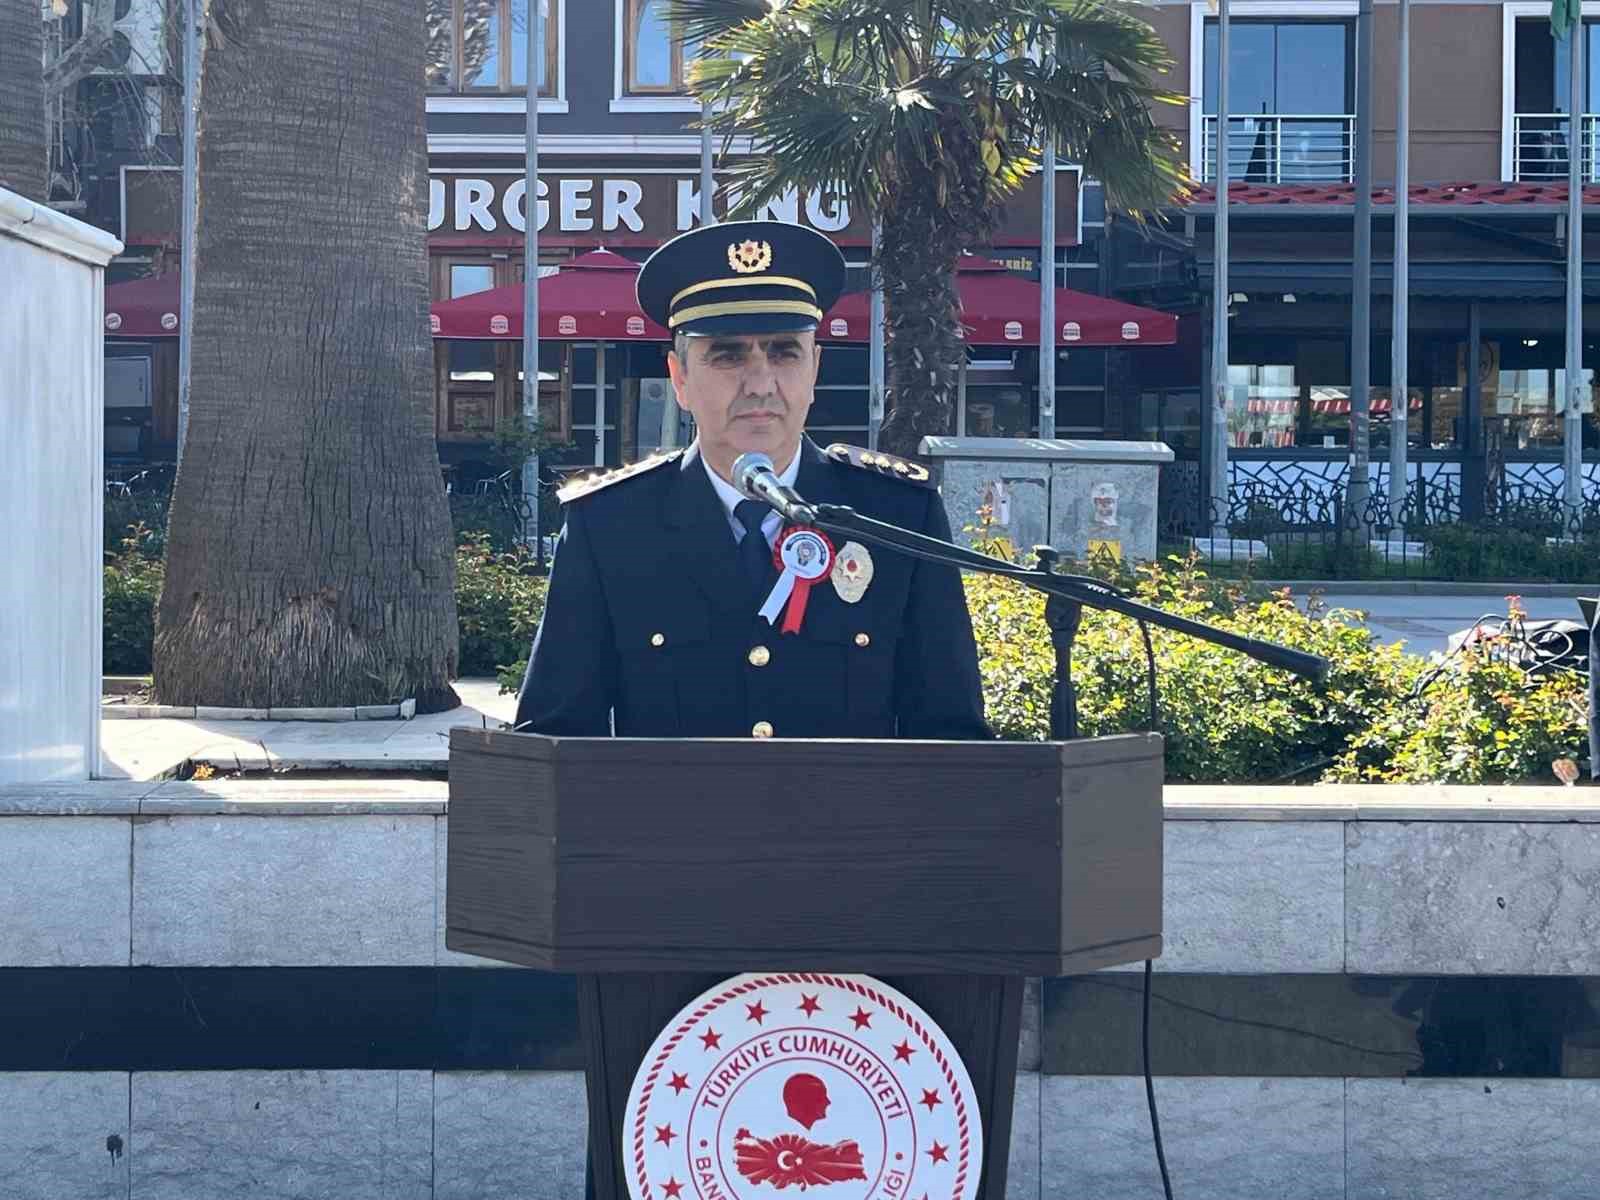 Bandırma’da Türk Polis Teşkilatı’nın 179. kuruluş yıldönümü kutlanıyor
